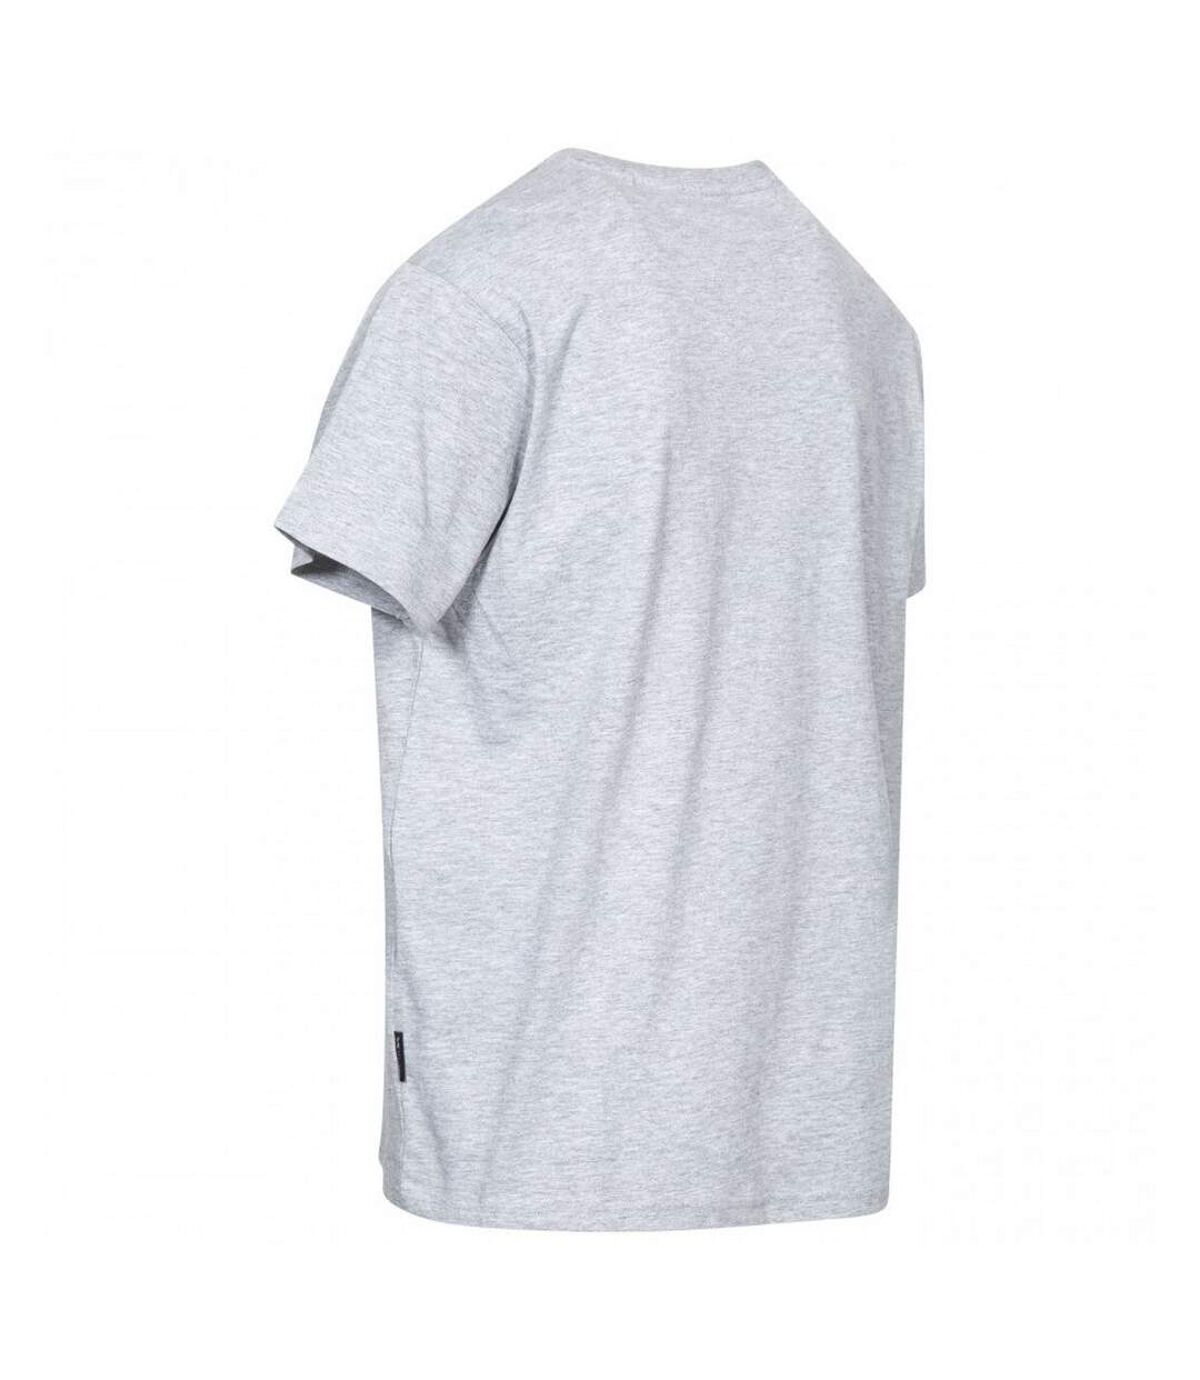 Trespass Mens Chained Short Sleeve T-shirt (Grey Marl) - UTTP4132